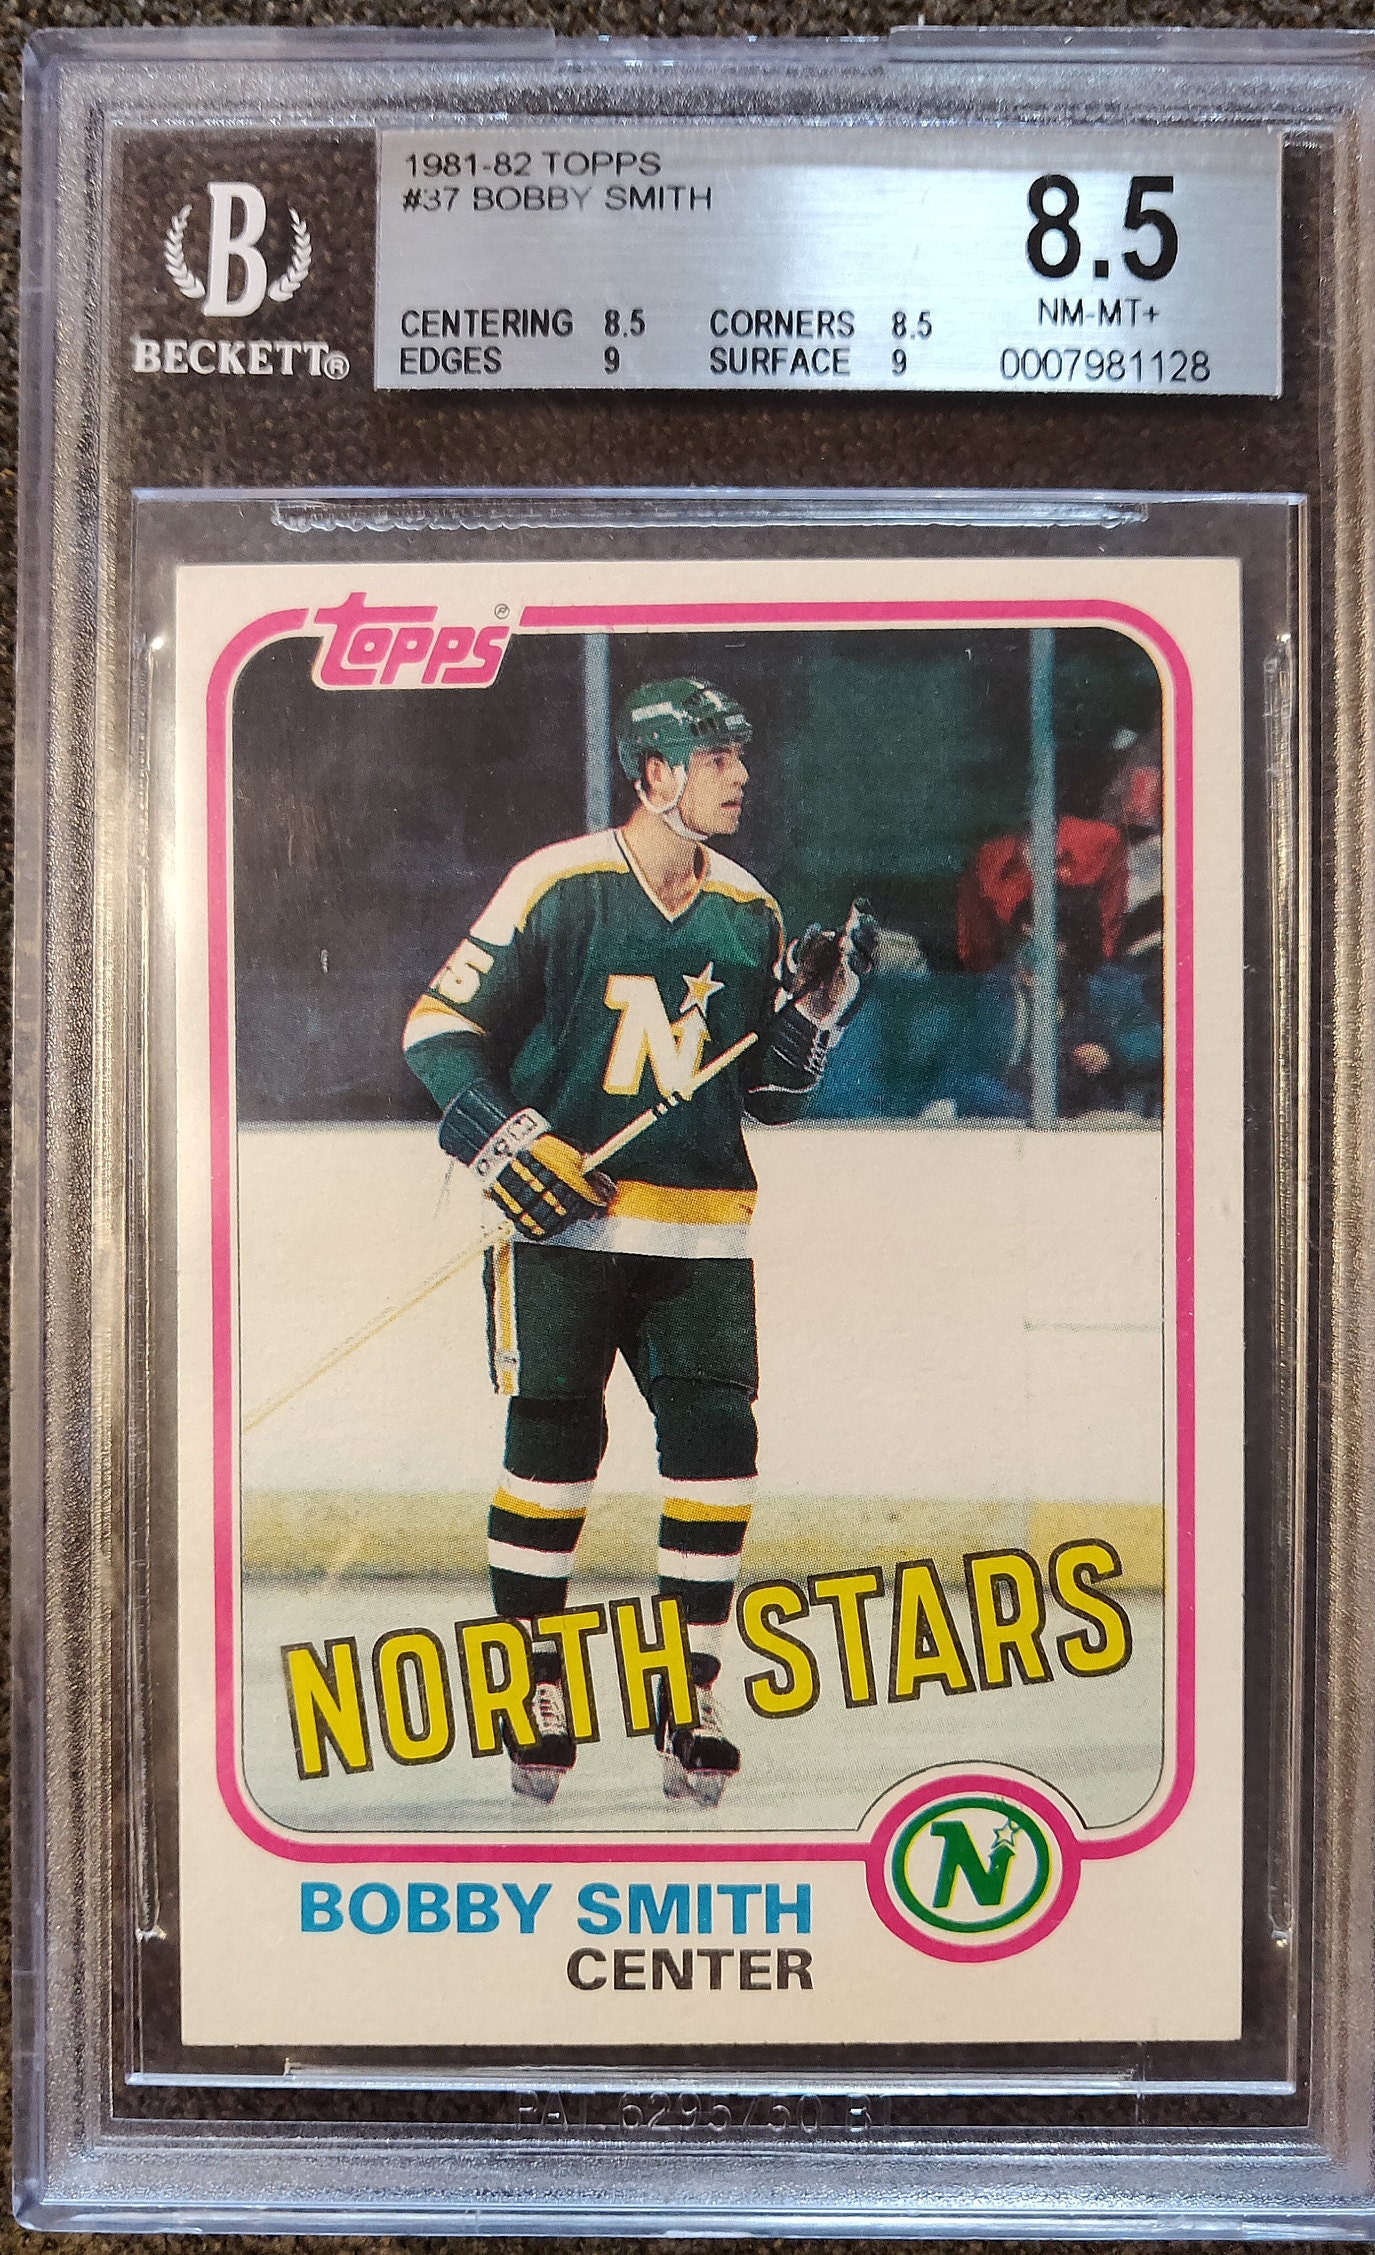 1981-82 Topps #5 Ray Bourque PSA 8 Graded Hockey Card NHL 1981